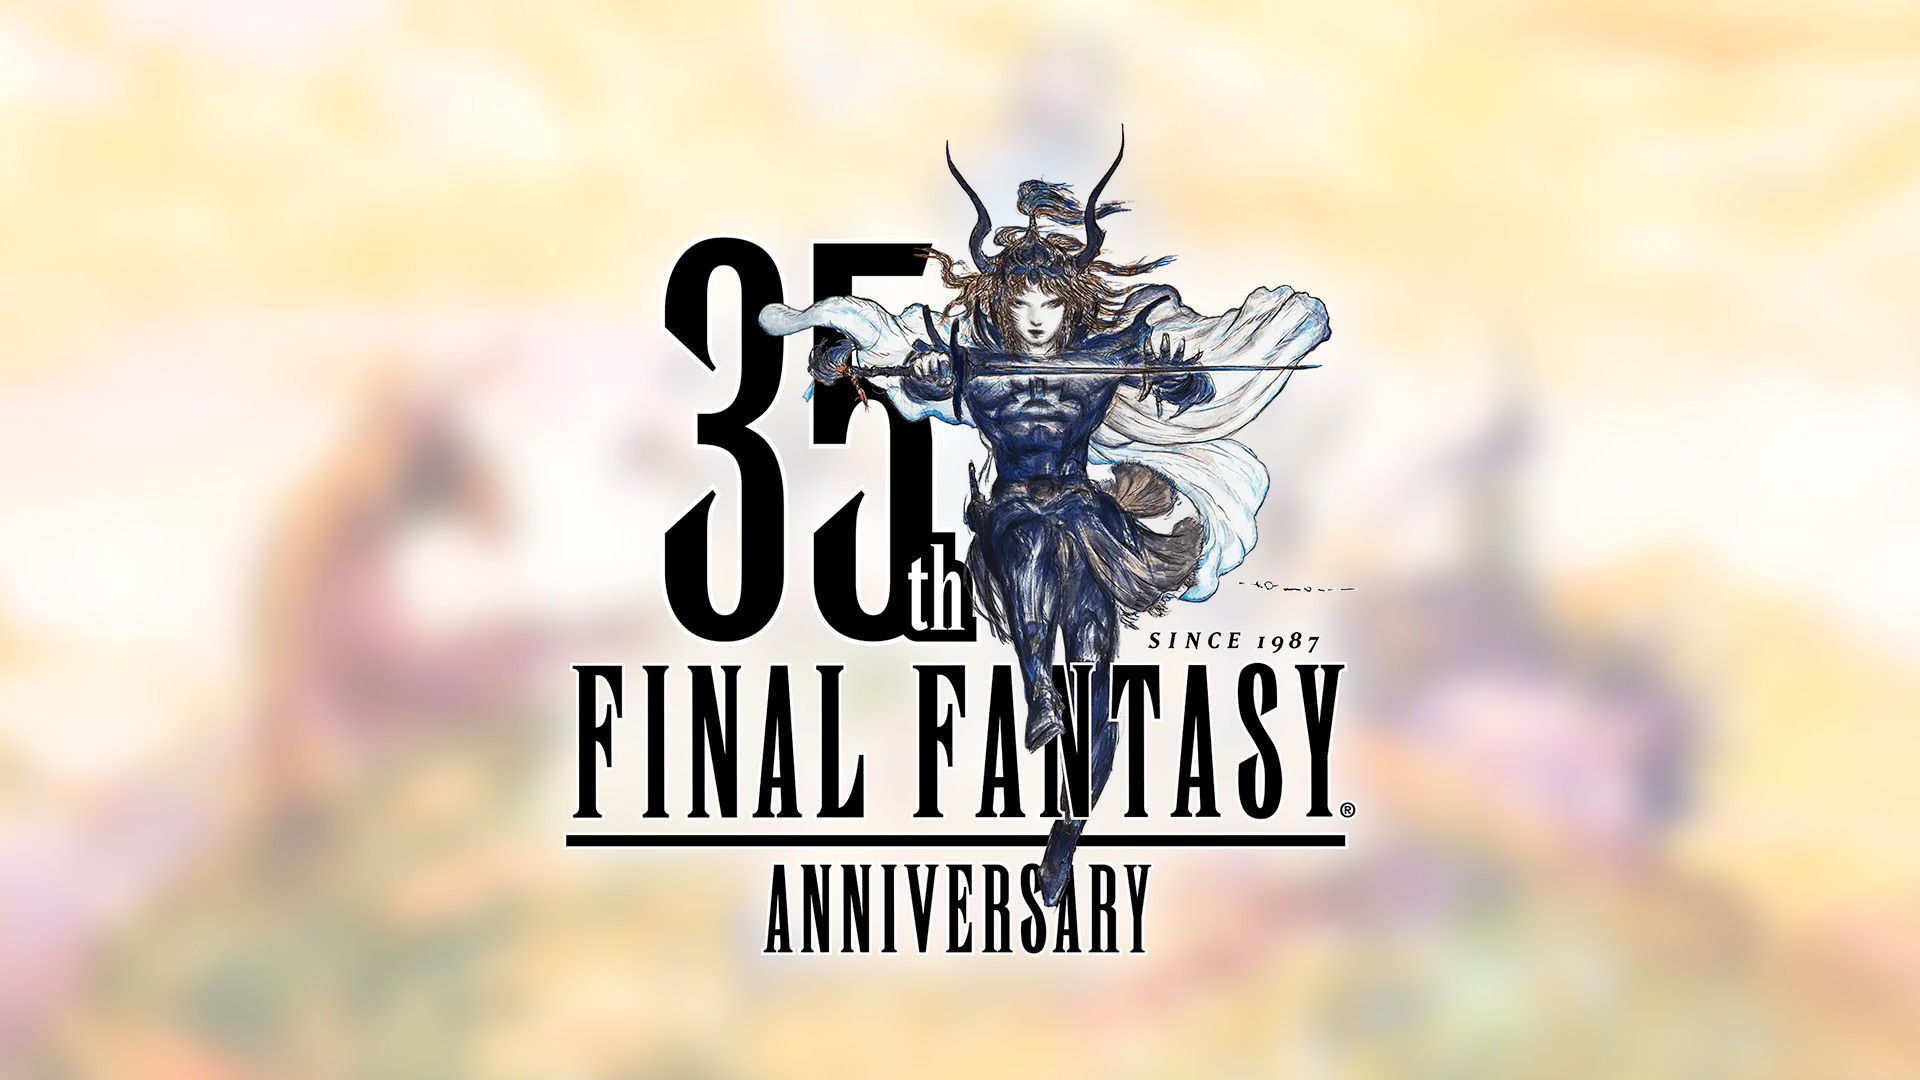 Square Enix dará noticias sobre el 35º aniversario de Final Fantasy en mayo o junio